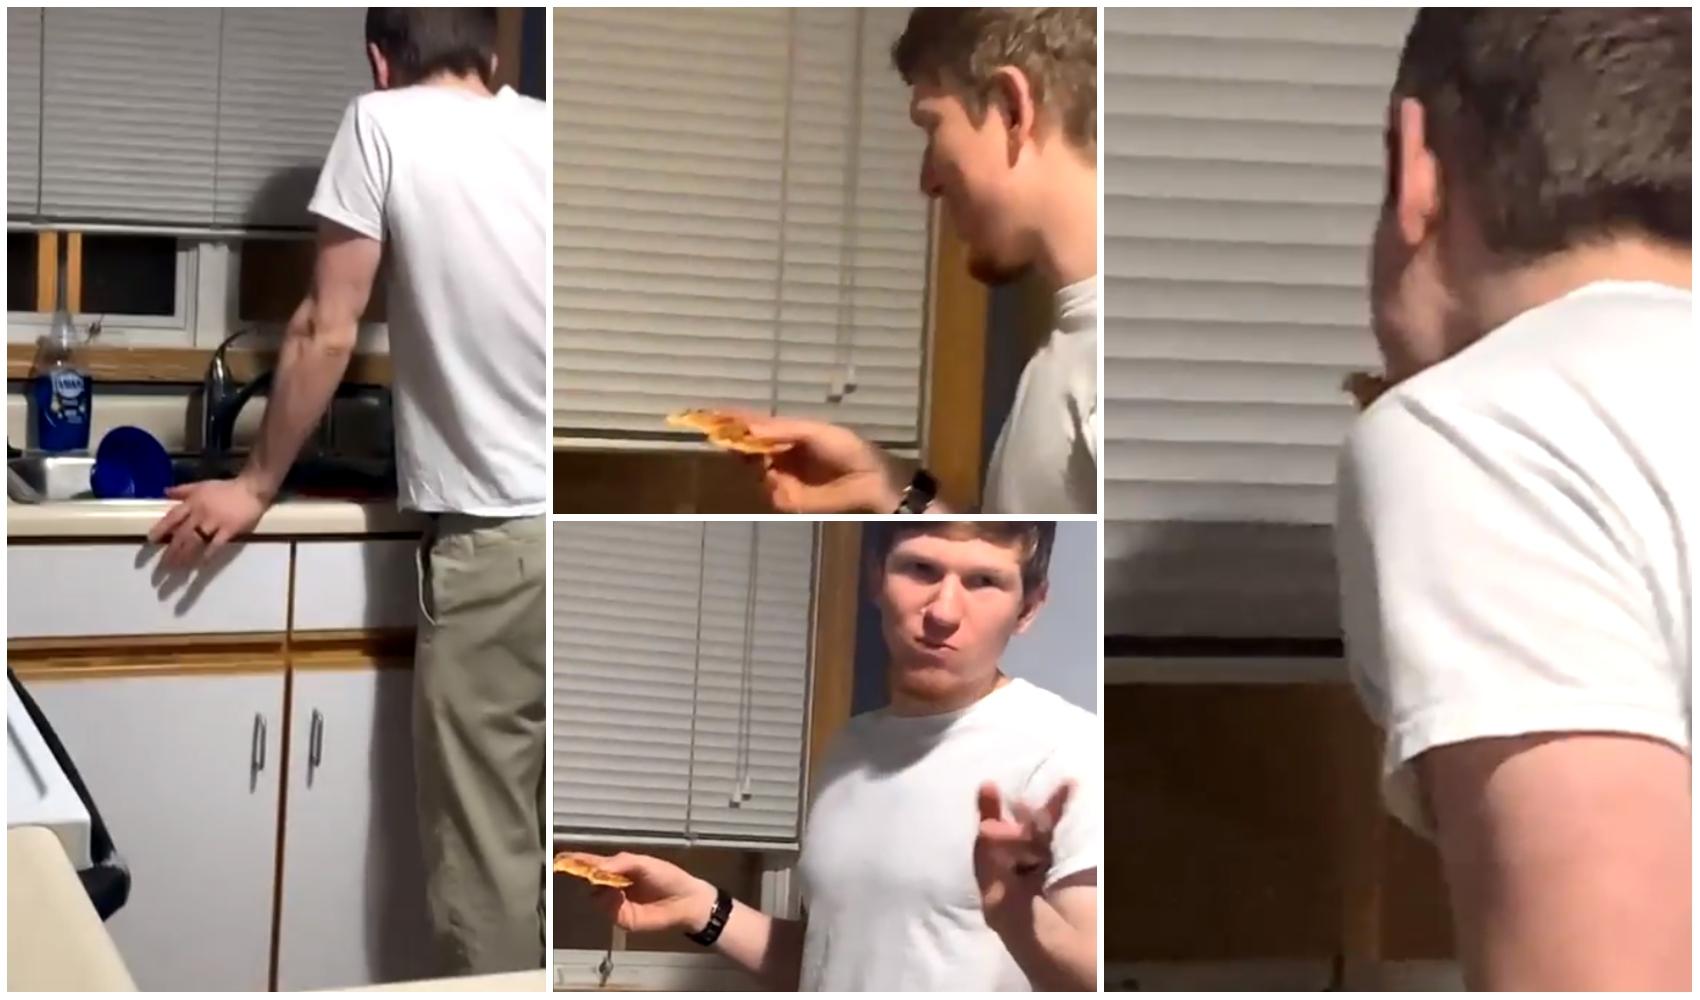 imagini cu sotul care mananca pizza